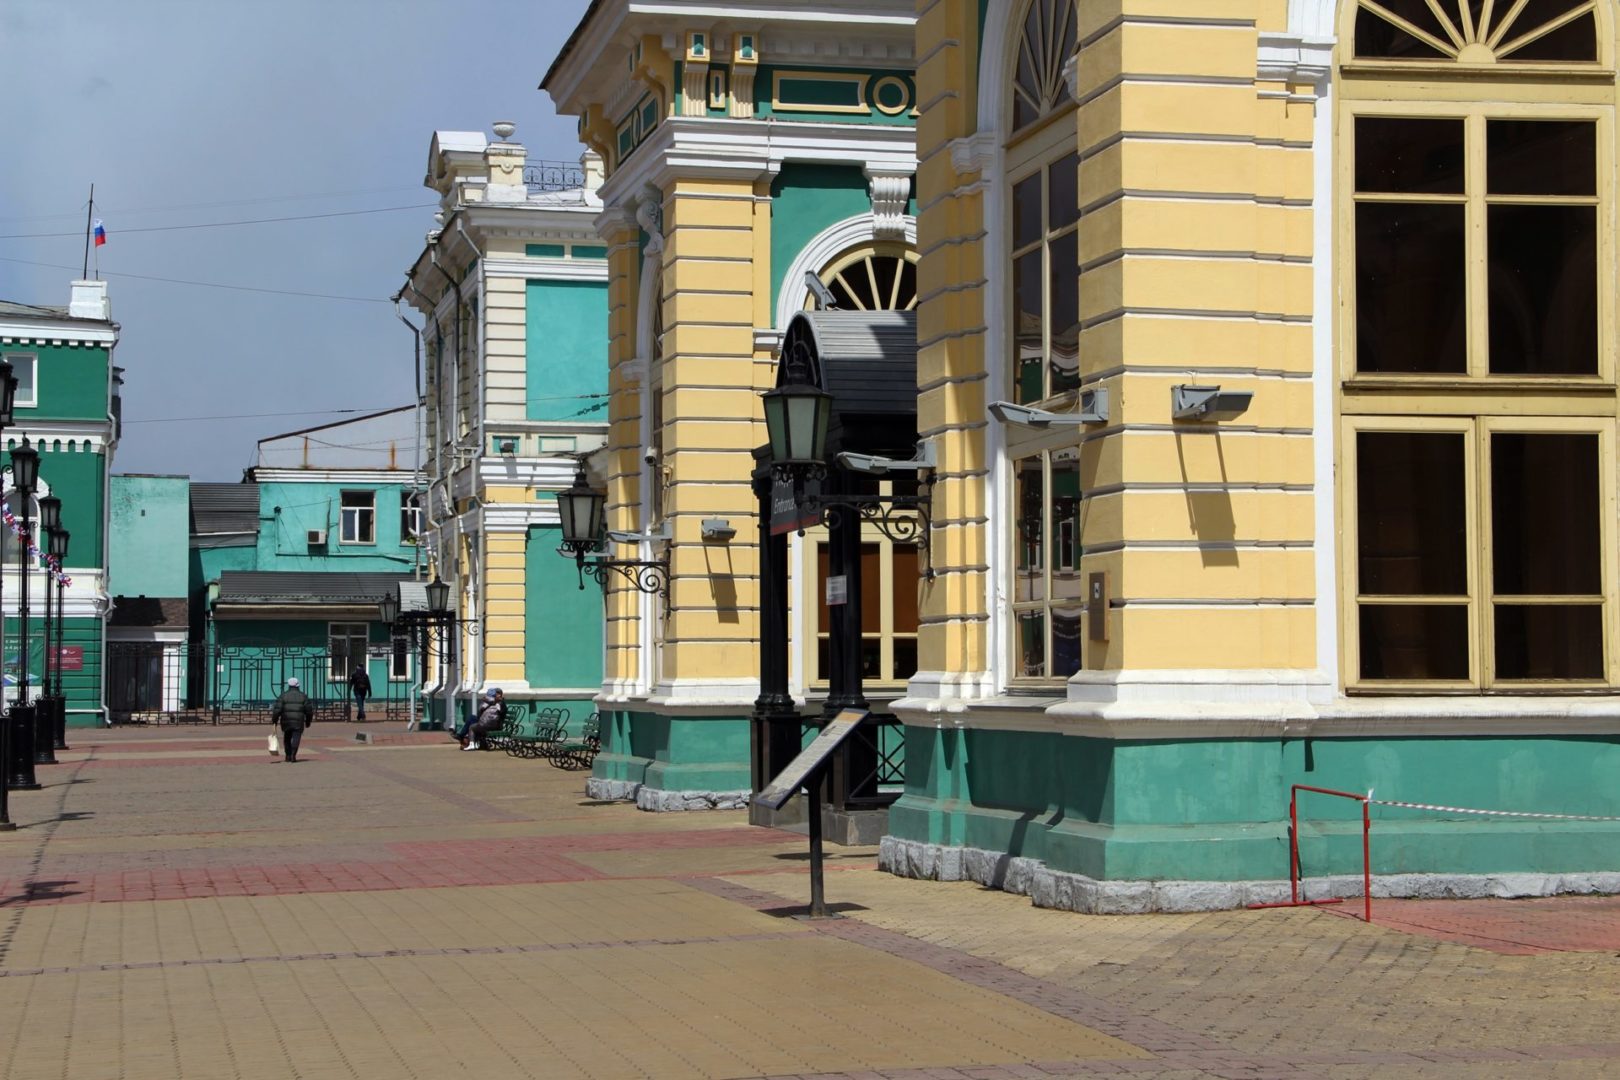 На вокзале Иркутск-Пассажирский готовятся снести павильон пригородных касс. Фото с места